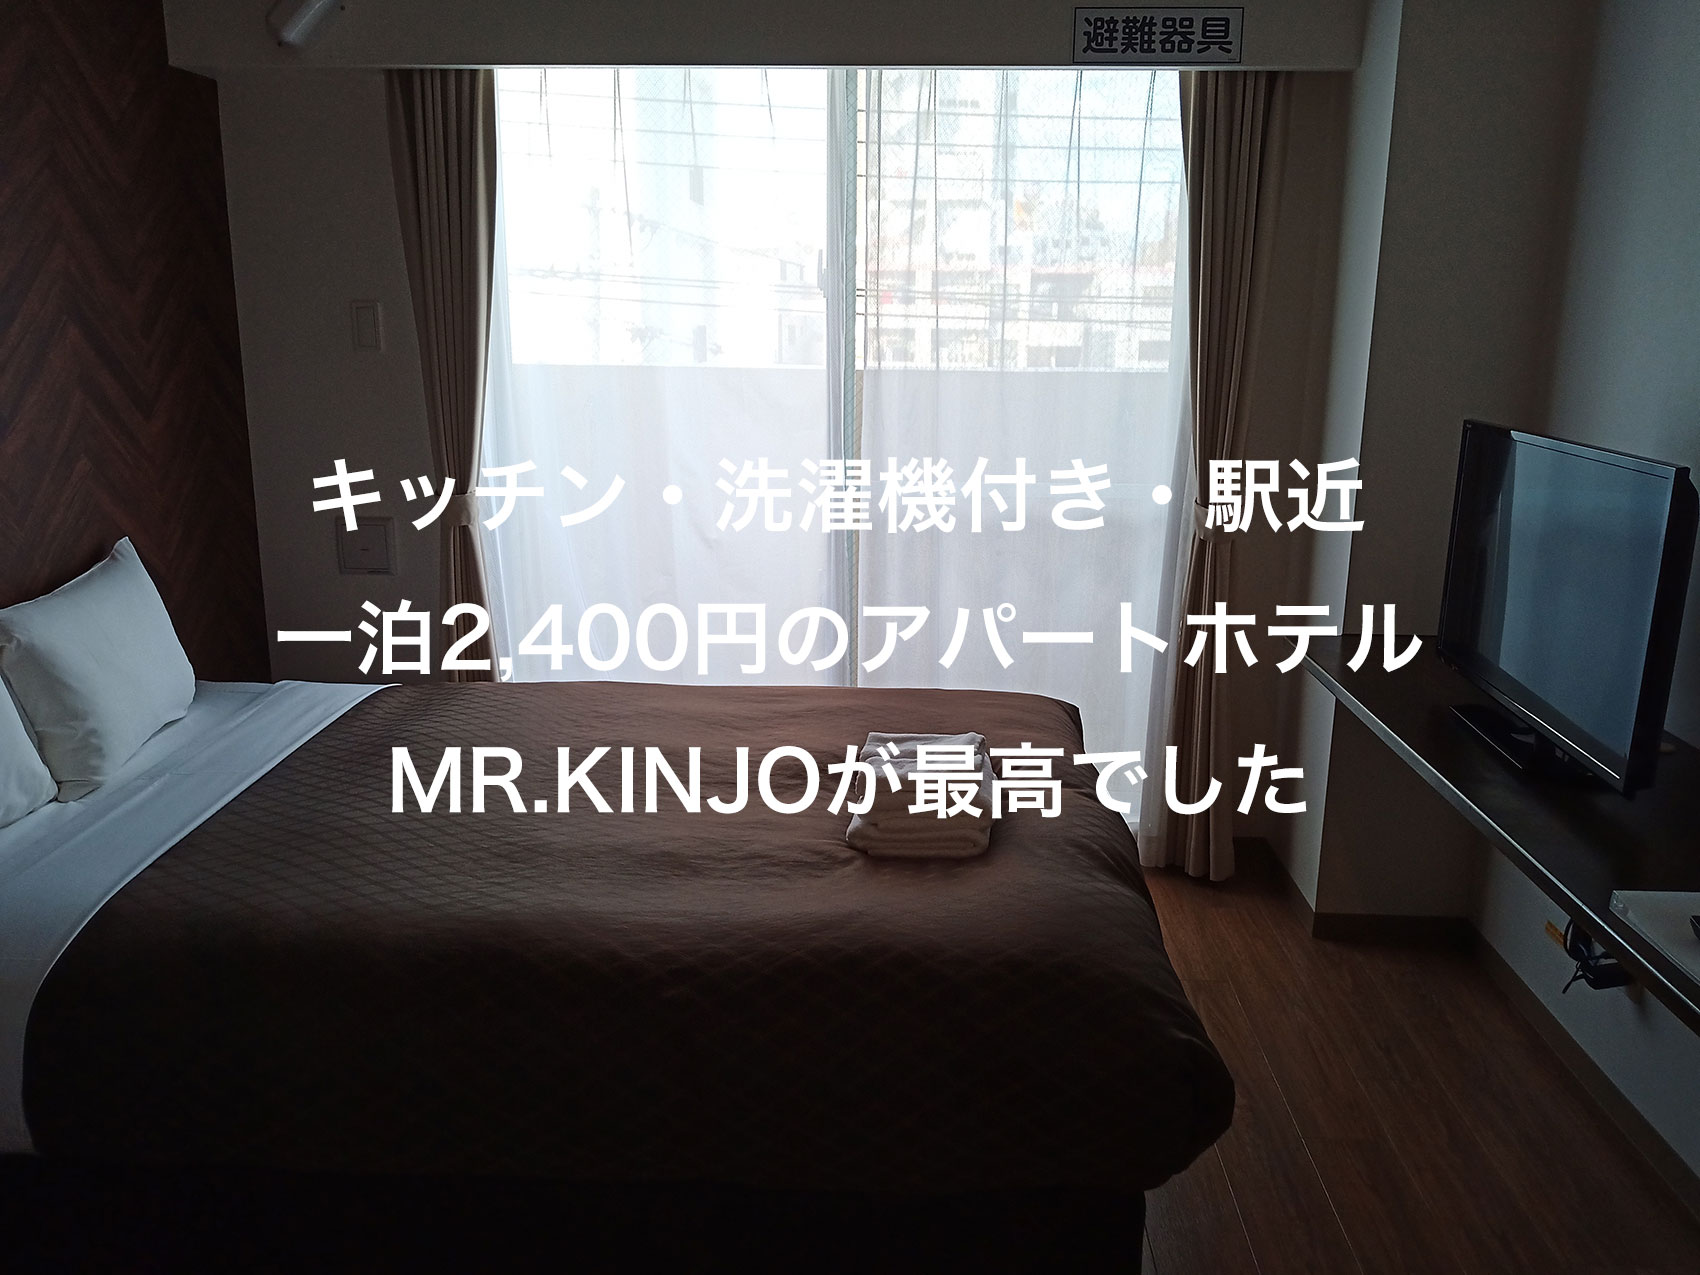 沖縄発のアパートホテル Mr.Kinjoがコスパ良すぎて感動したので紹介する